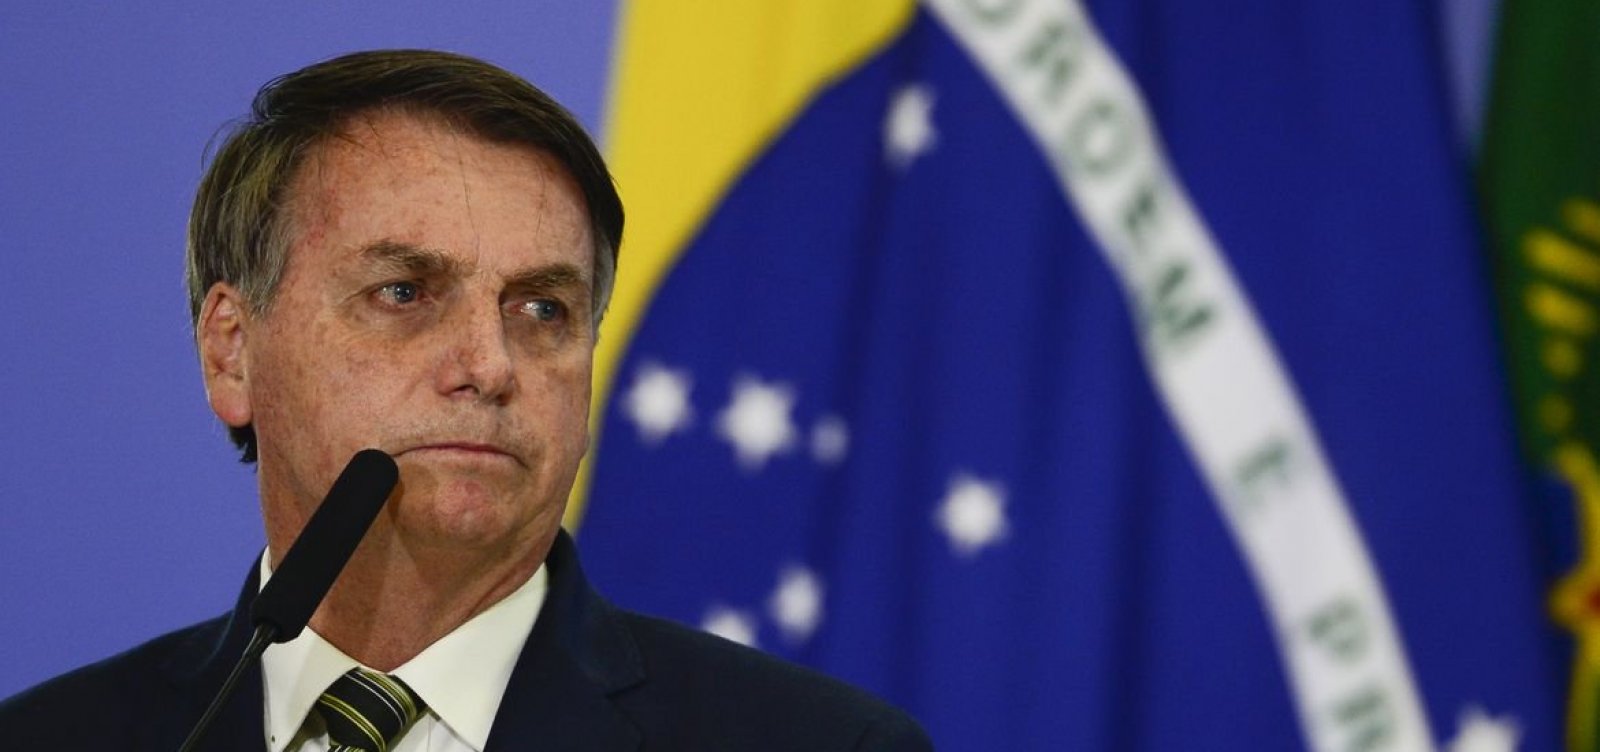 ‘Eu me responsabilizo pelos meus erros’, diz Bolsonaro a apoiadores em Brasília